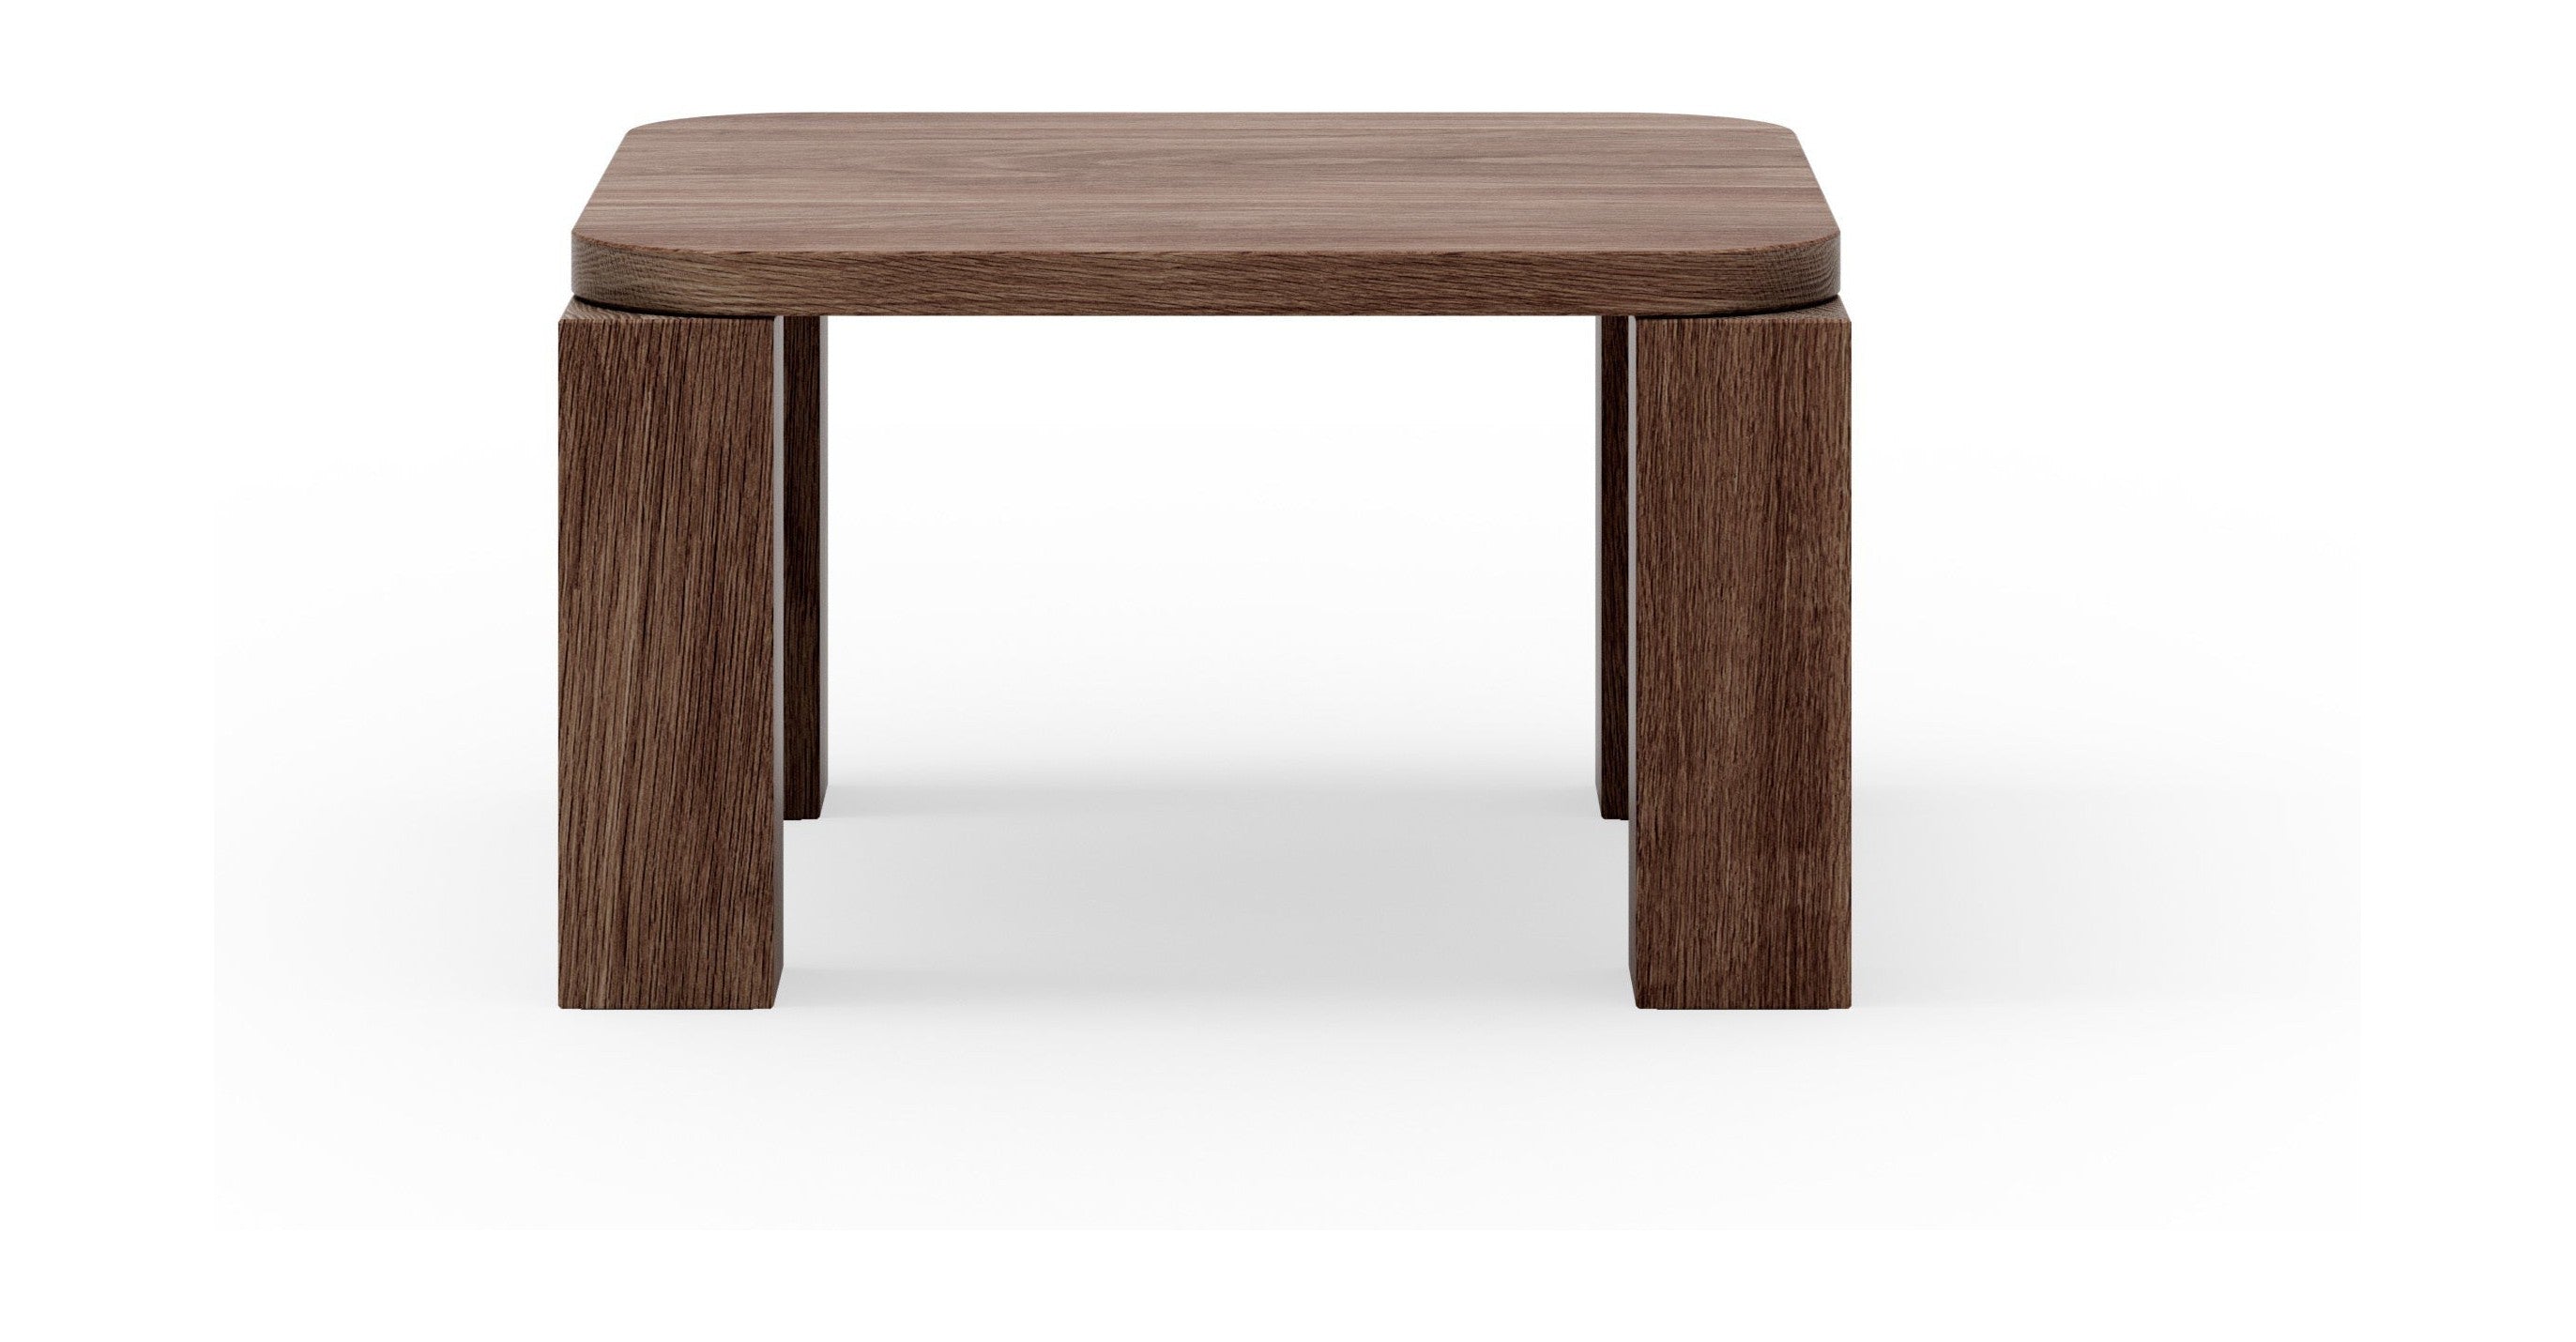 New Works Atlas Coffee Table Fumed Oak, 60x60 cm